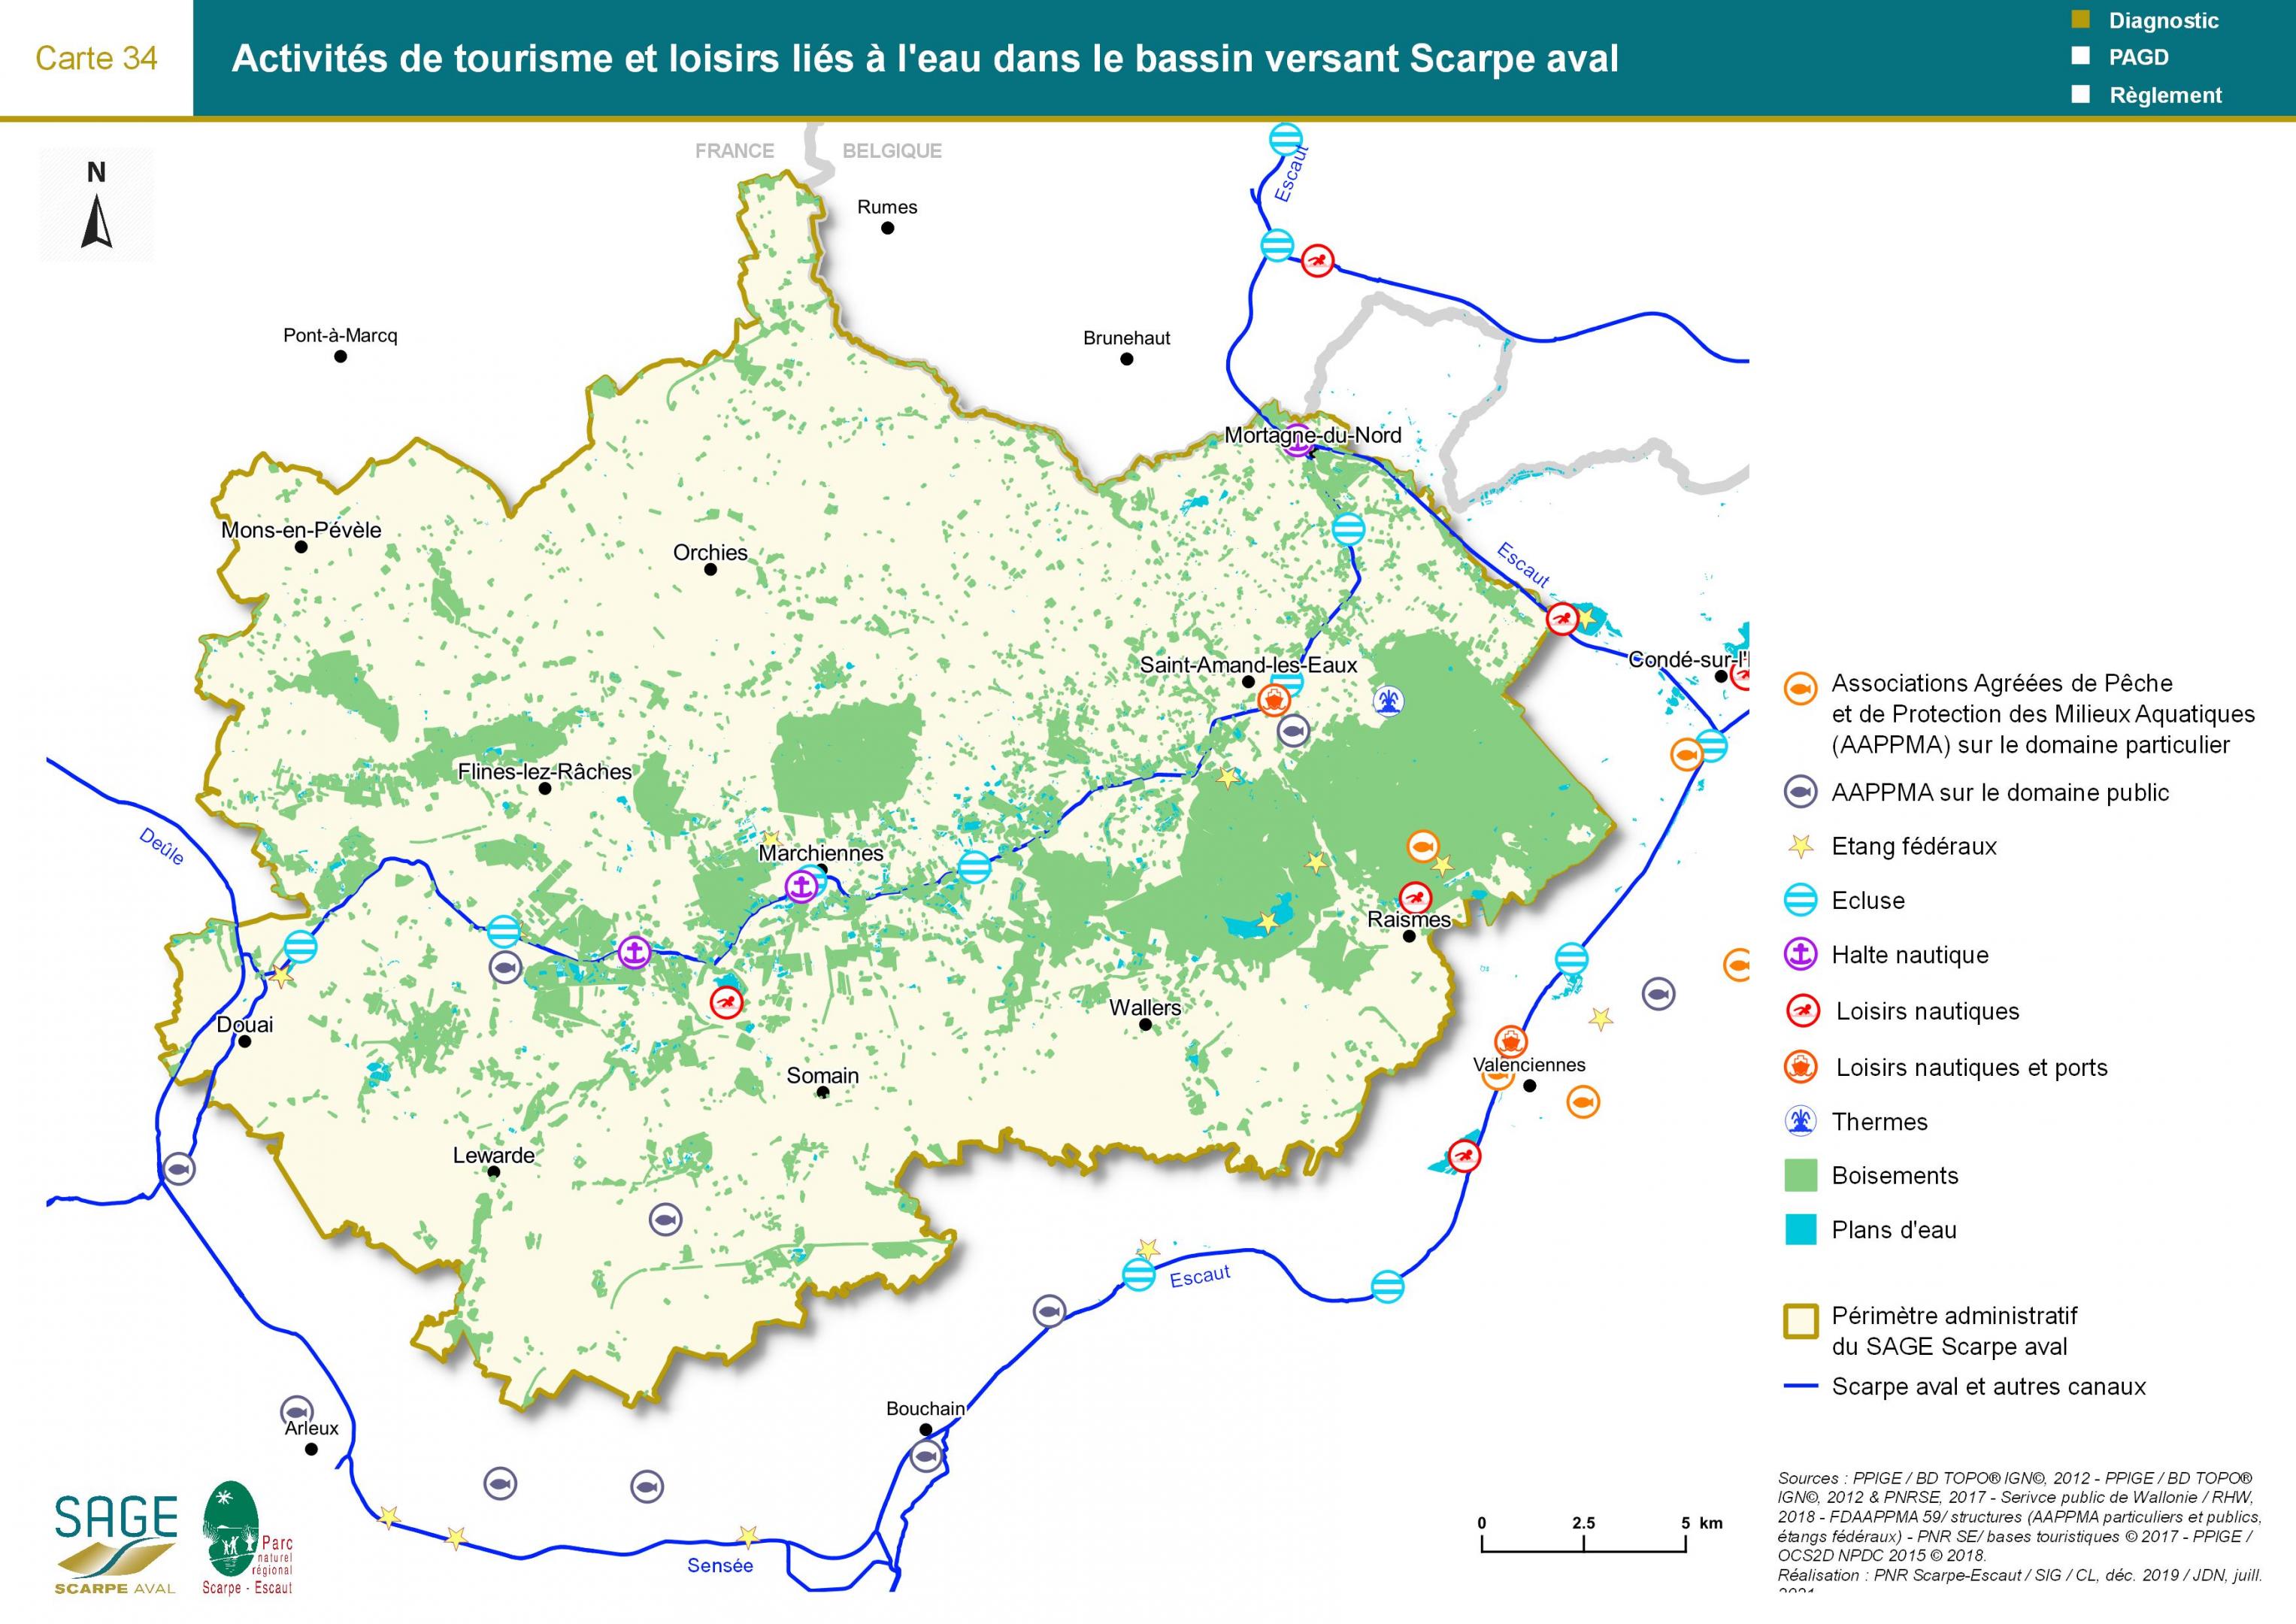 Etat des lieux - Carte 34 : Activités de tourisme et loisirs liés à l’eau dans le bassin versant Scarpe aval